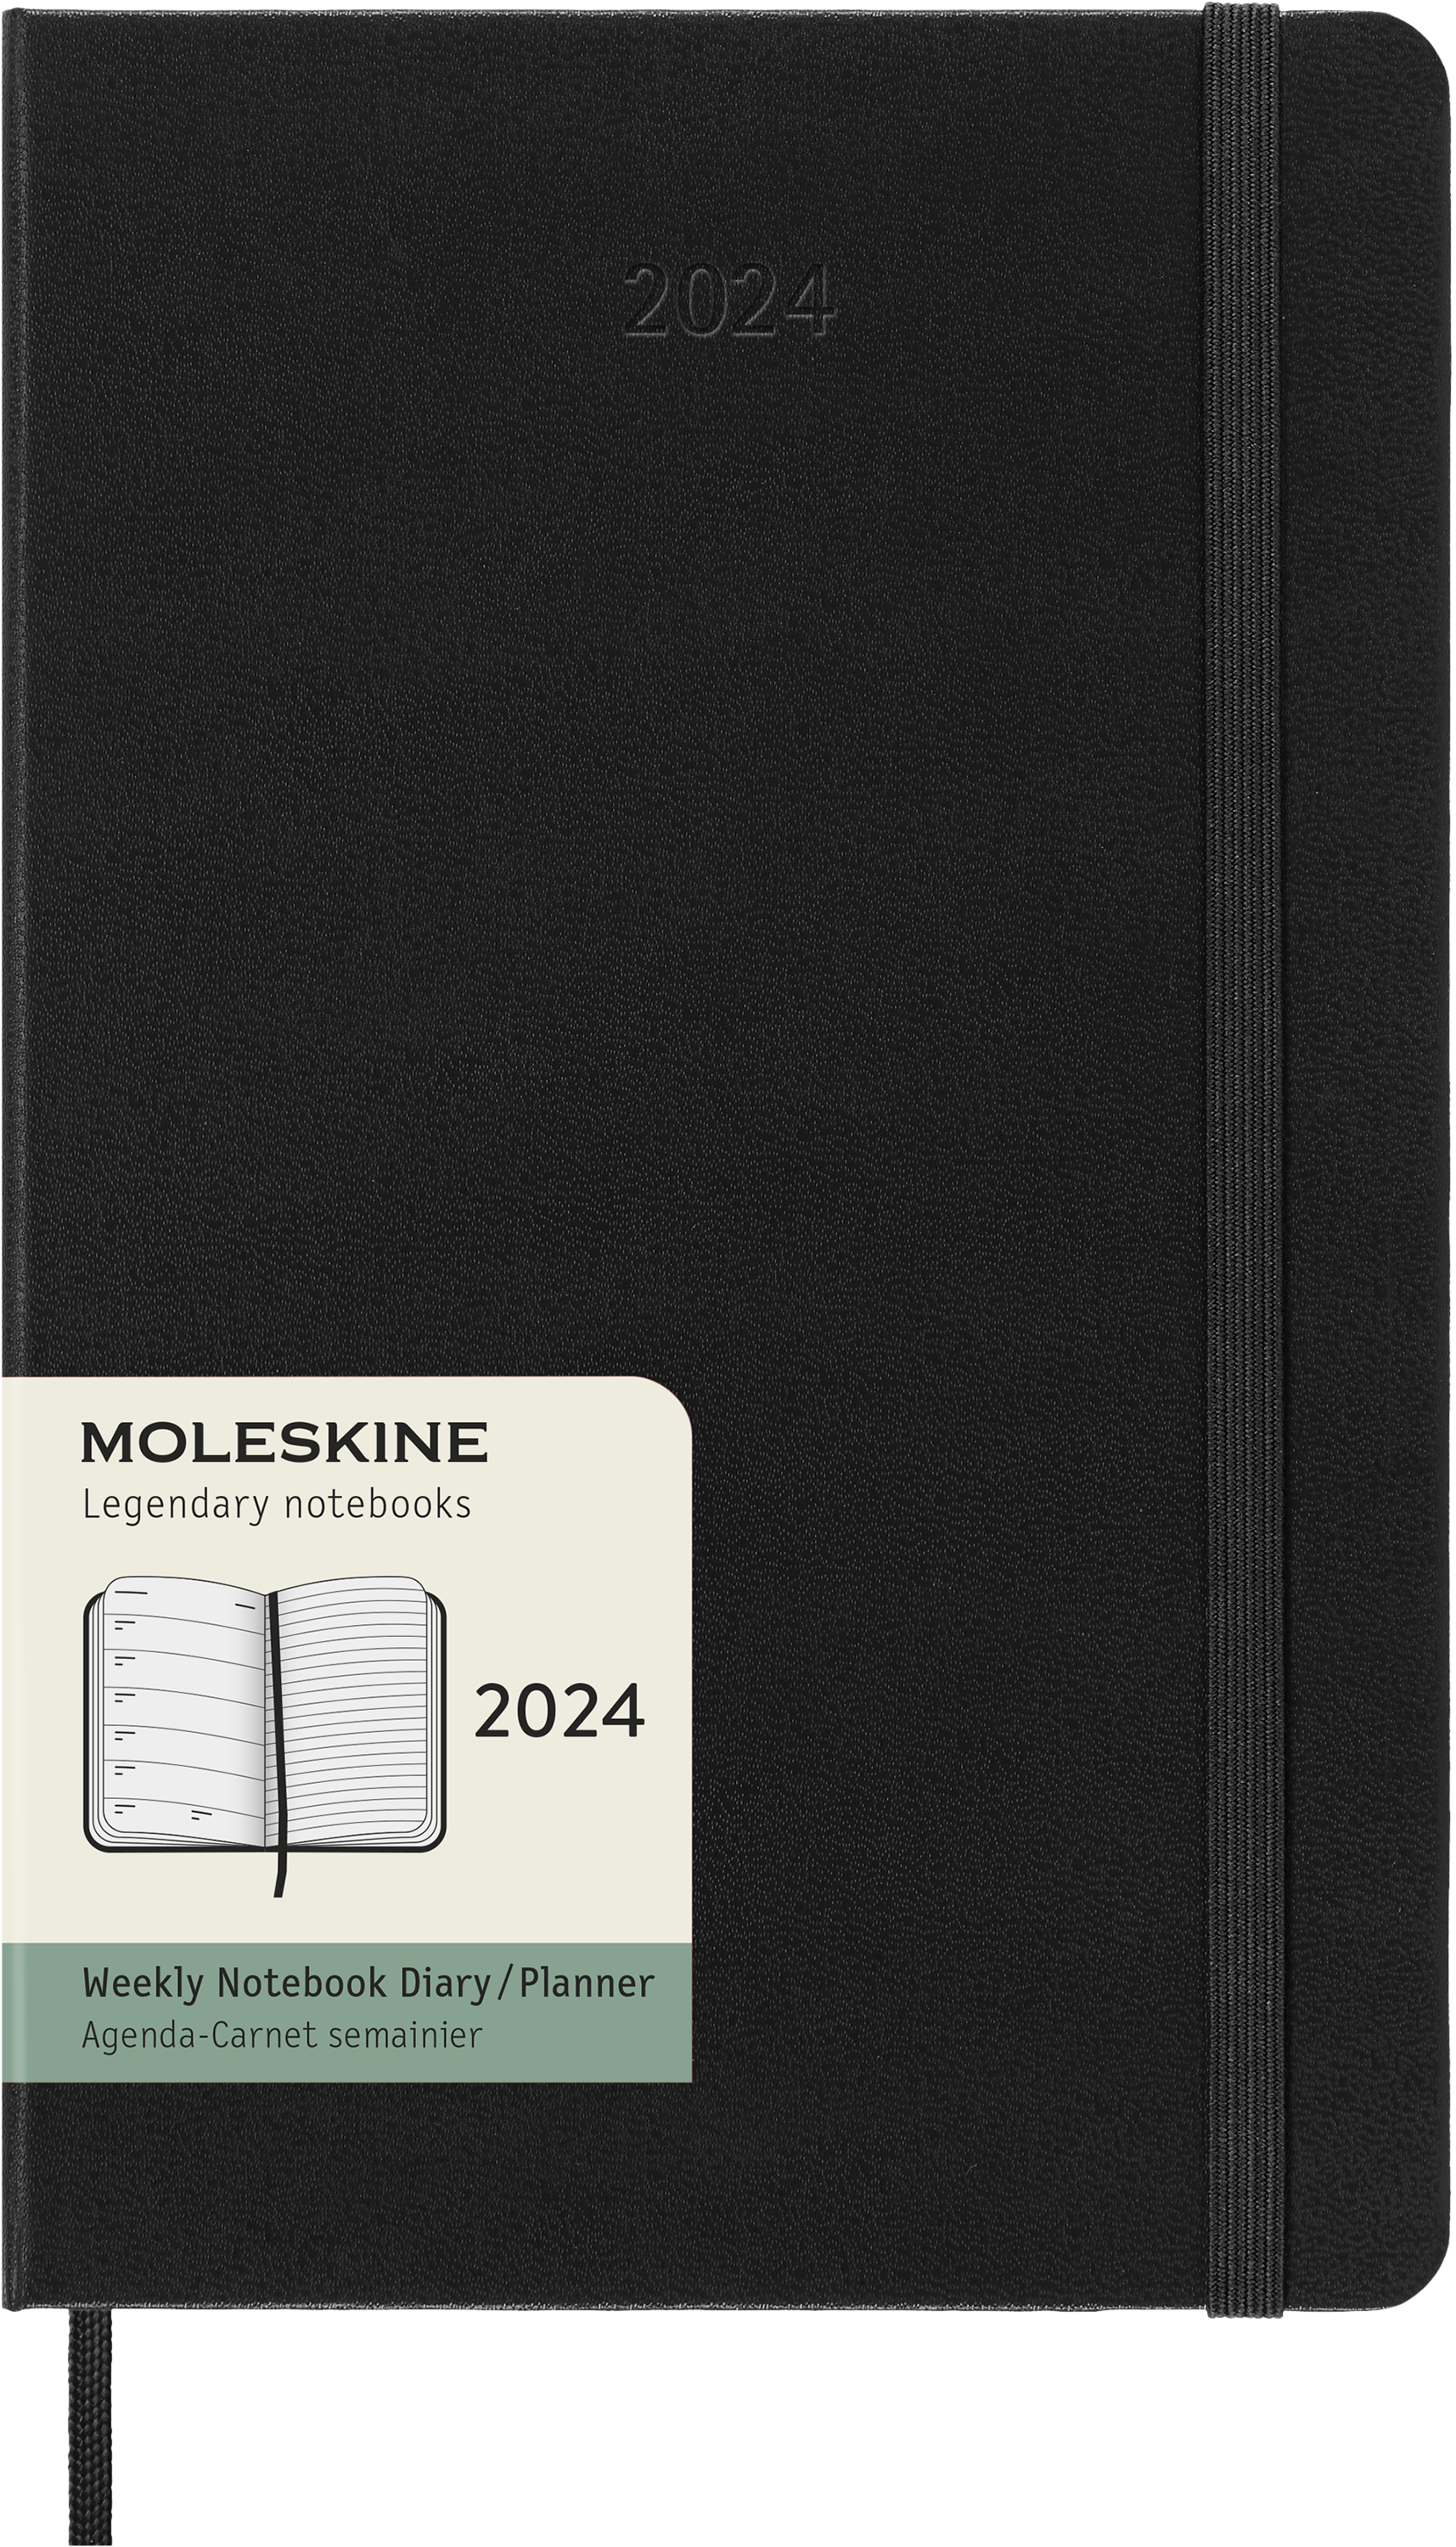 Moleskine 2024 agenda hardcover large week